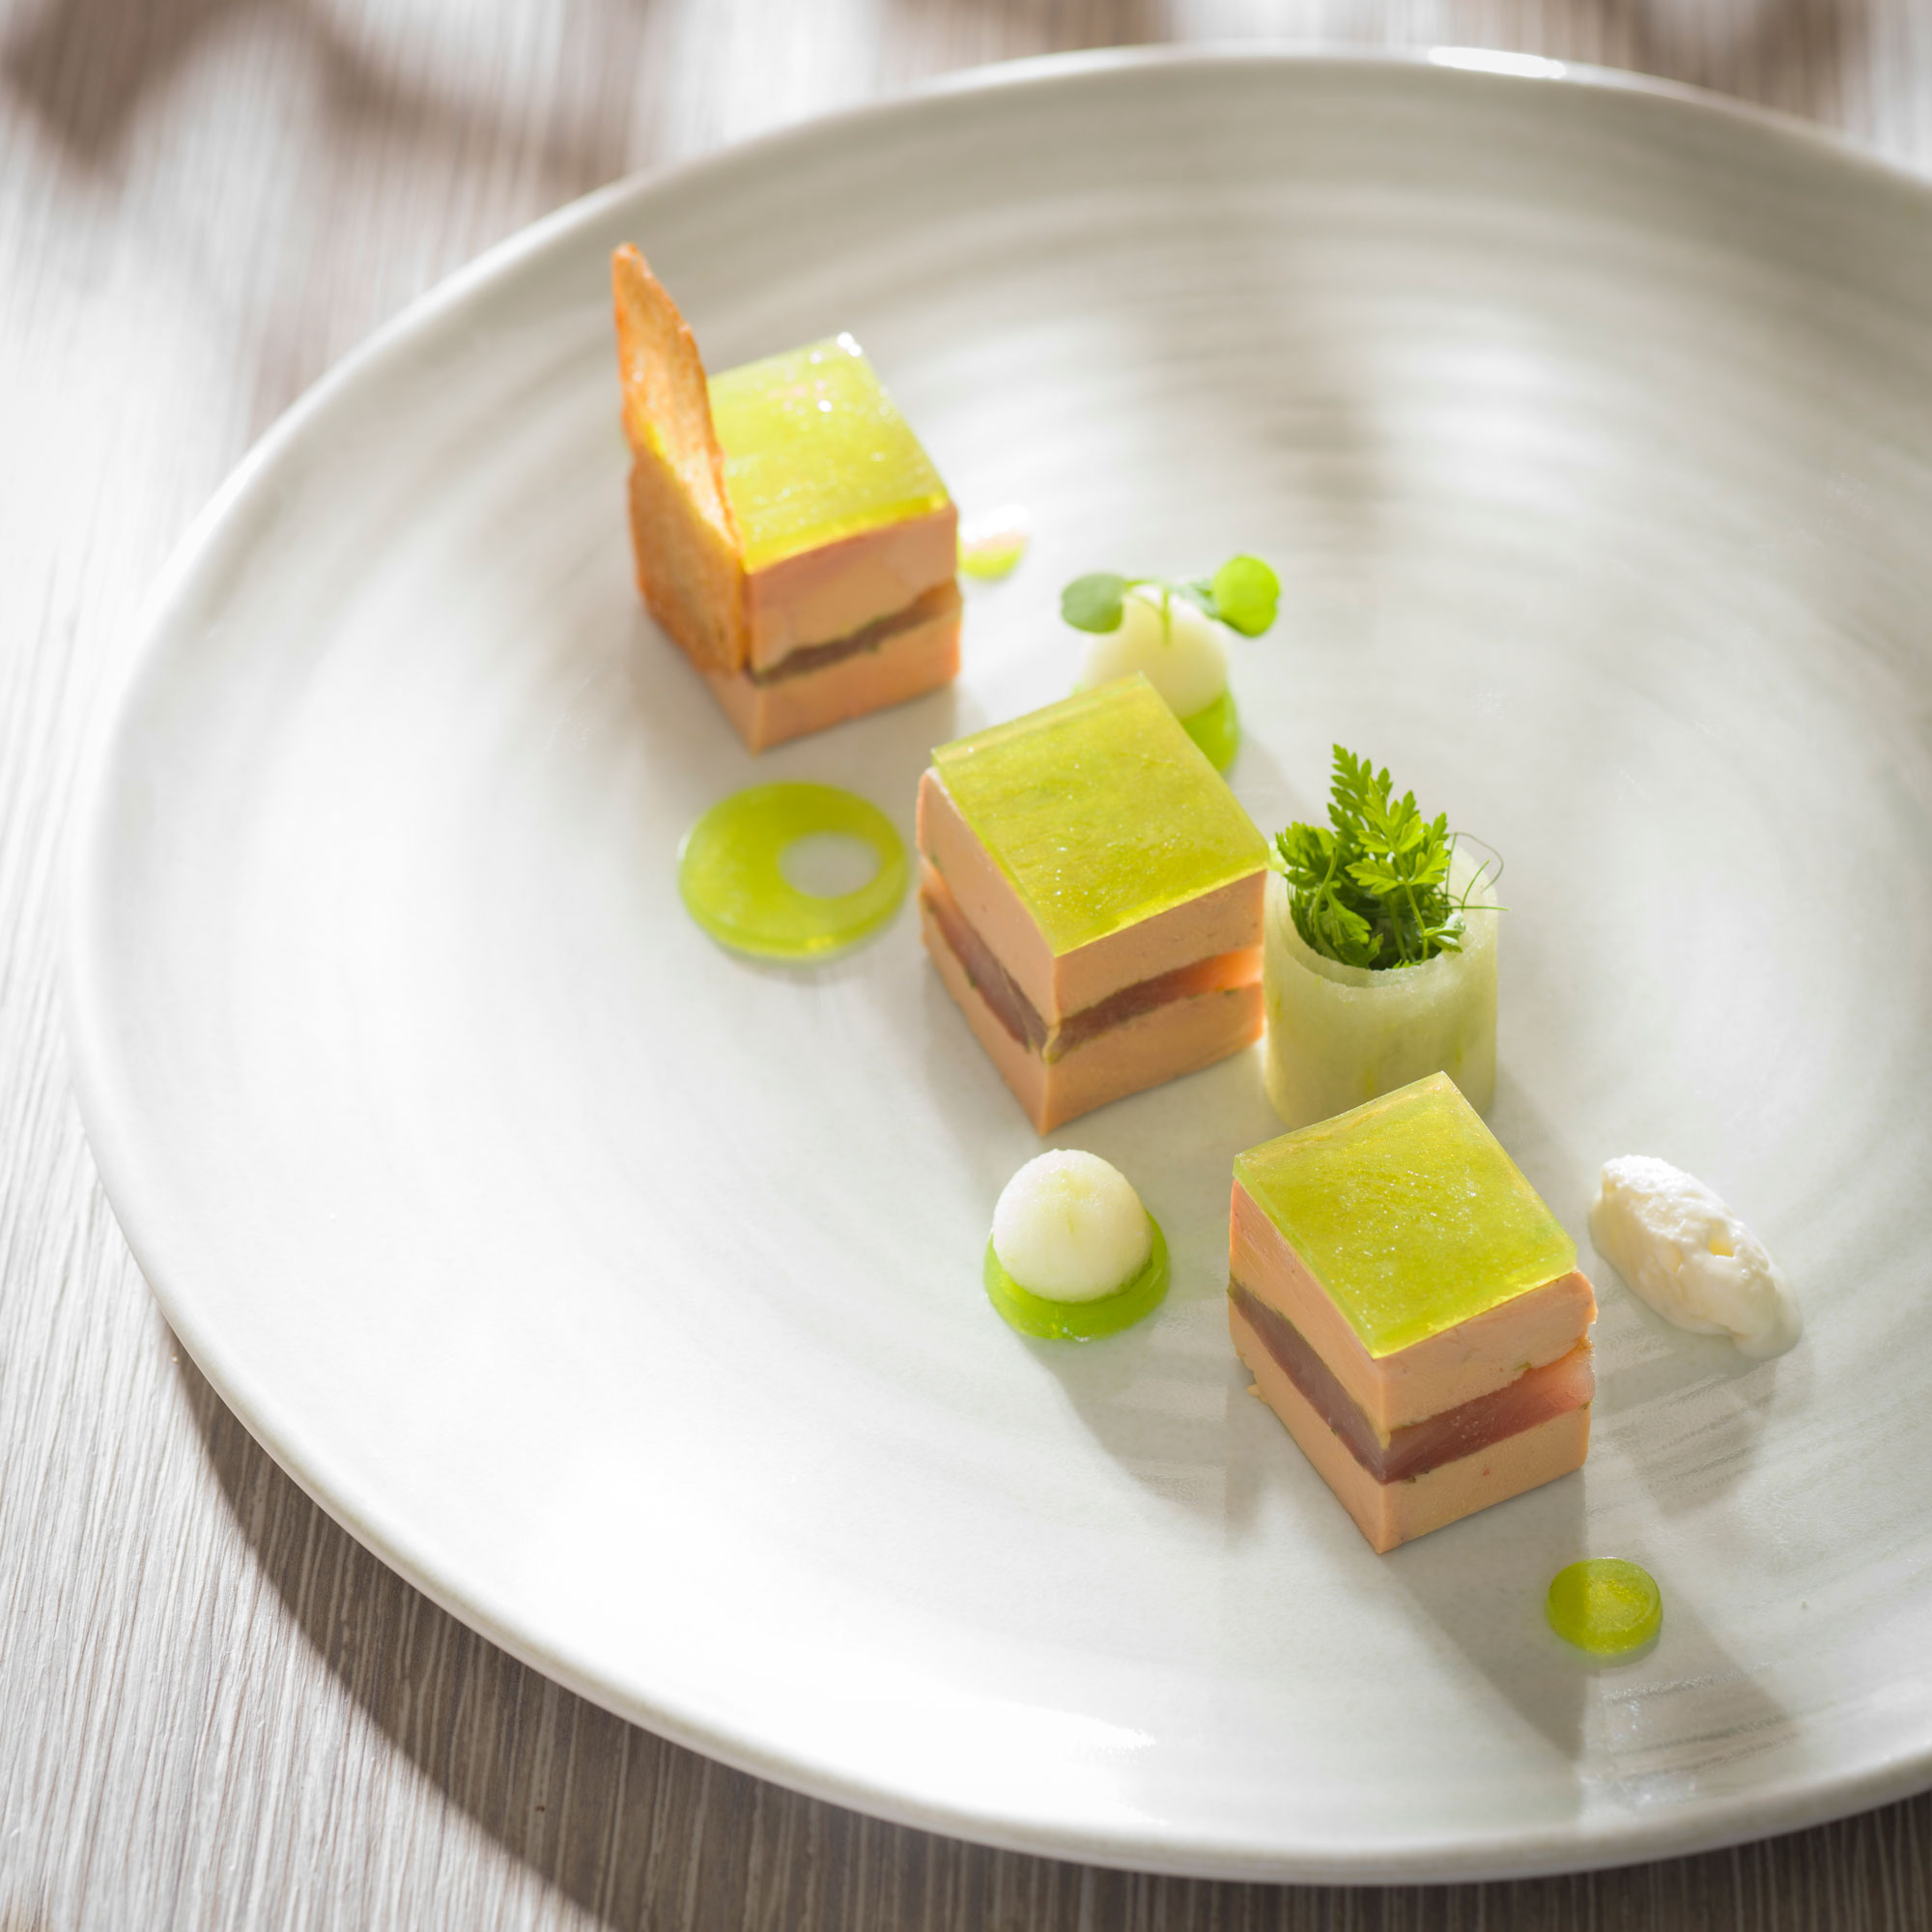 https://www.arts-et-gastronomie.com/wp-content/uploads/2016/01/Presse-de-foie-gras-de-canard-et-fera-fumee.jpg